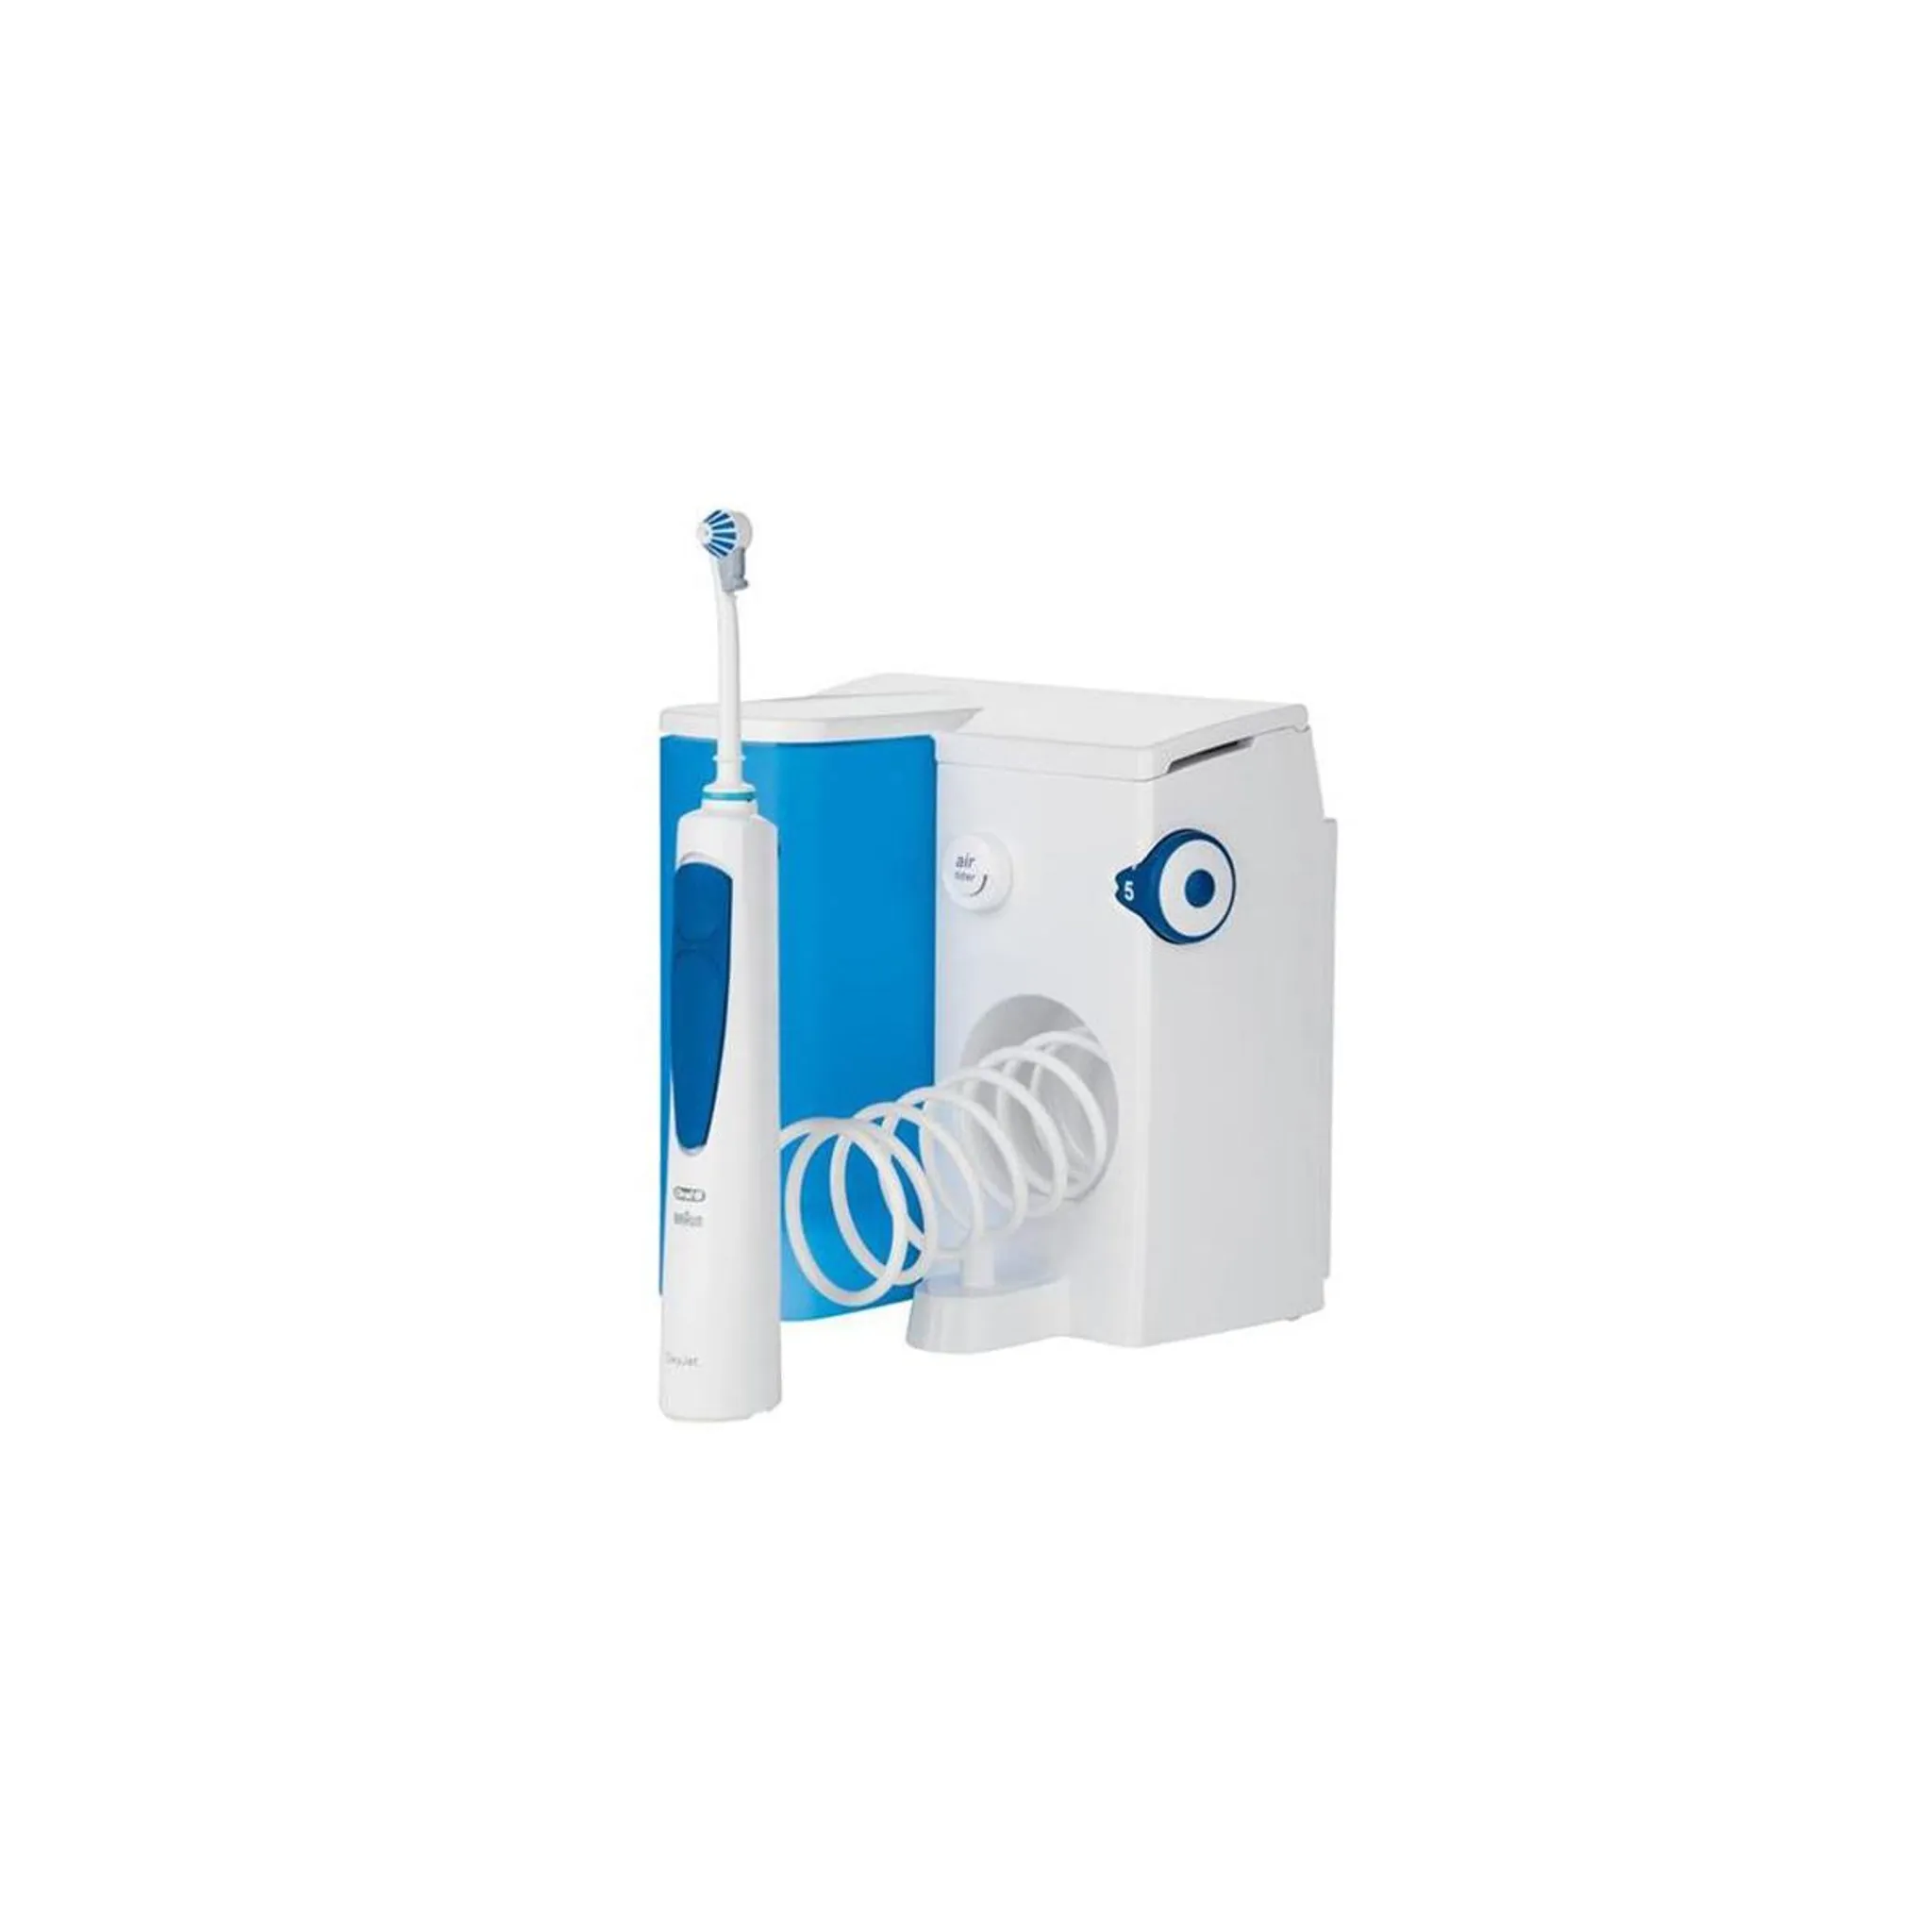 Munddusche OxyJet Oral-B Reinigungssystem mit